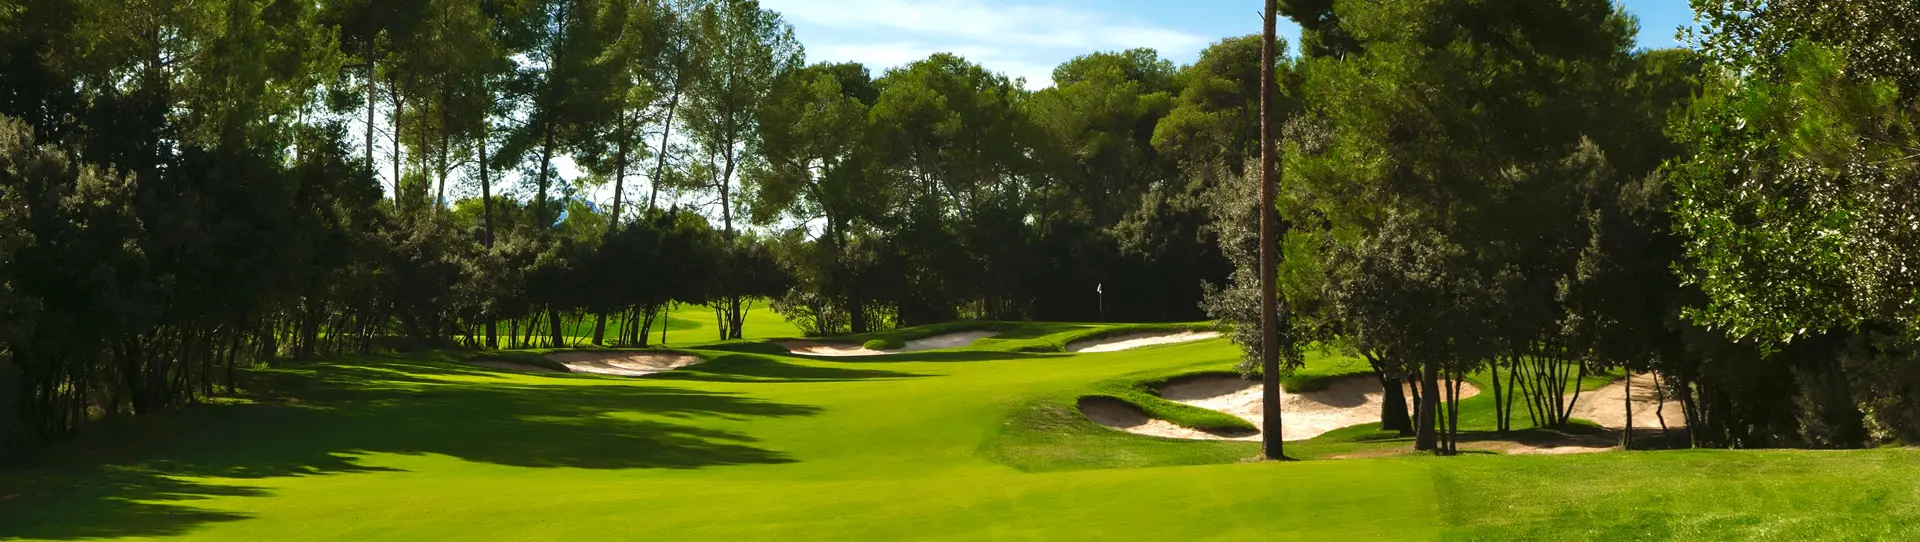 Spain golf courses - Real Club de Golf El Prat - Photo 3